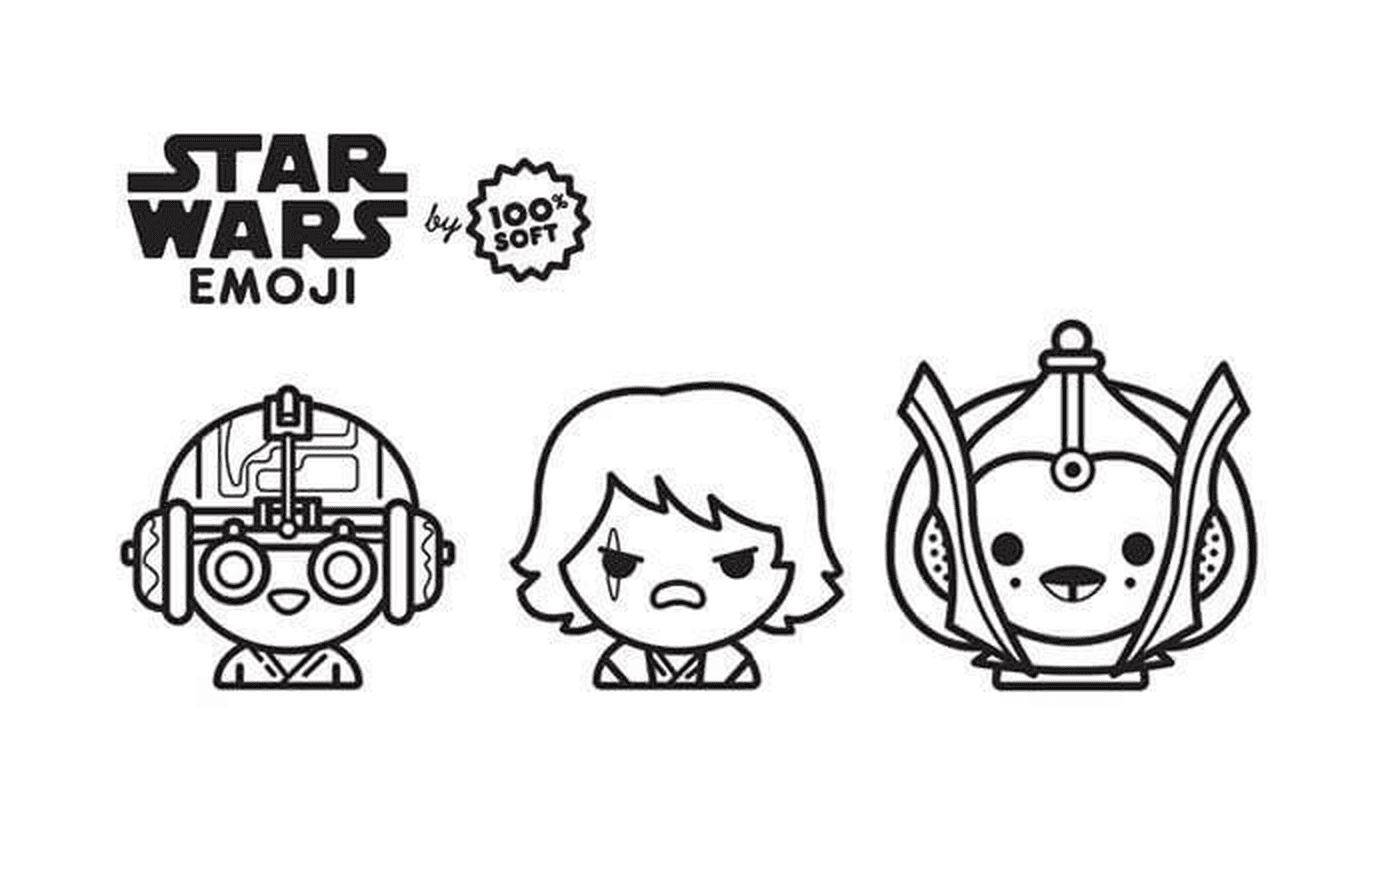  埃莫吉星际大战,阿纳金(Emoji Star Wars saga),阿纳金(Anakin) 